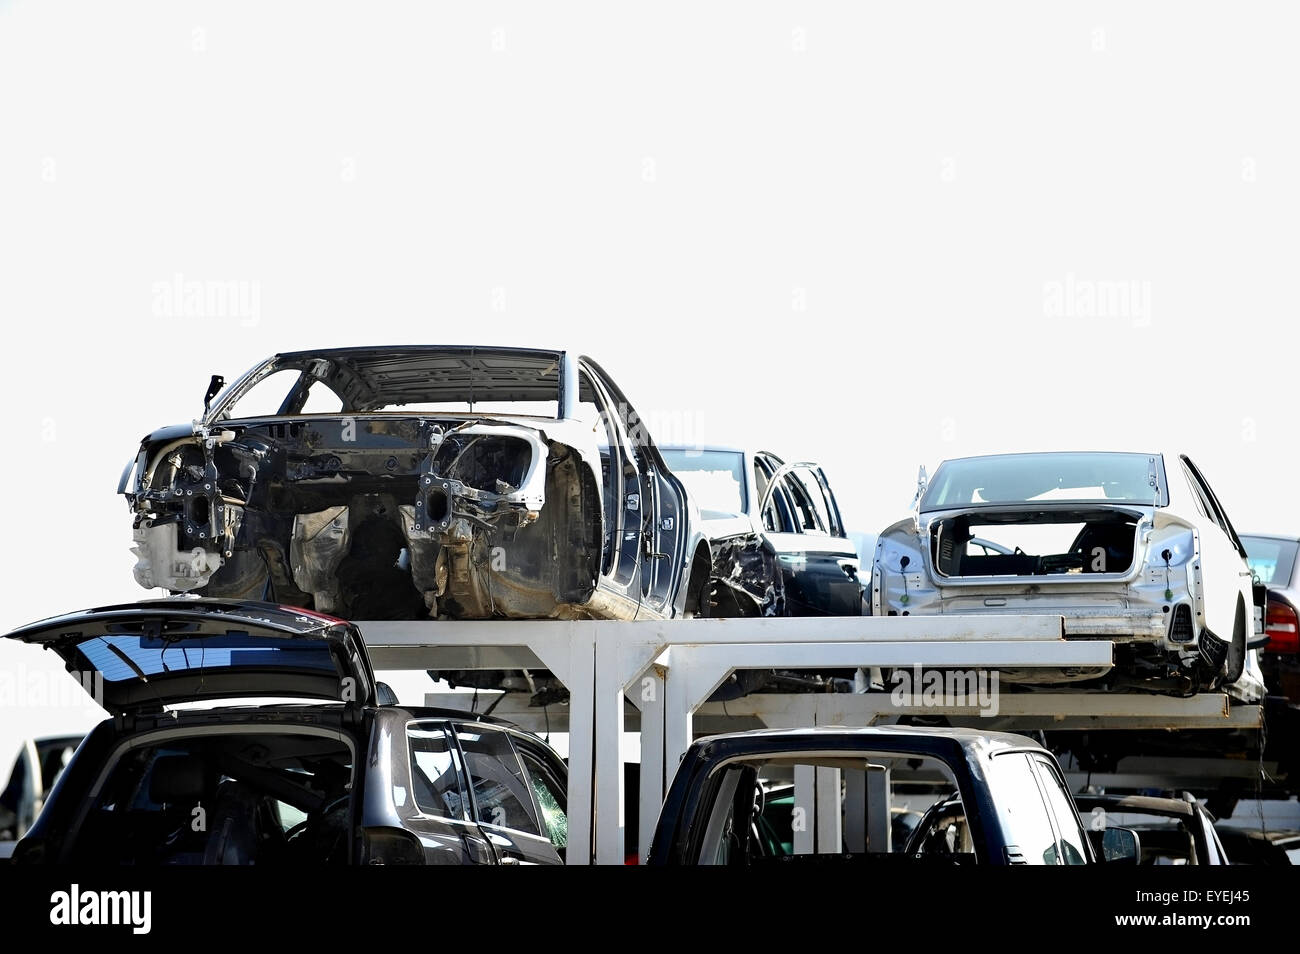 Véhicules accidentés sont vus dans une voiture junkyard Banque D'Images